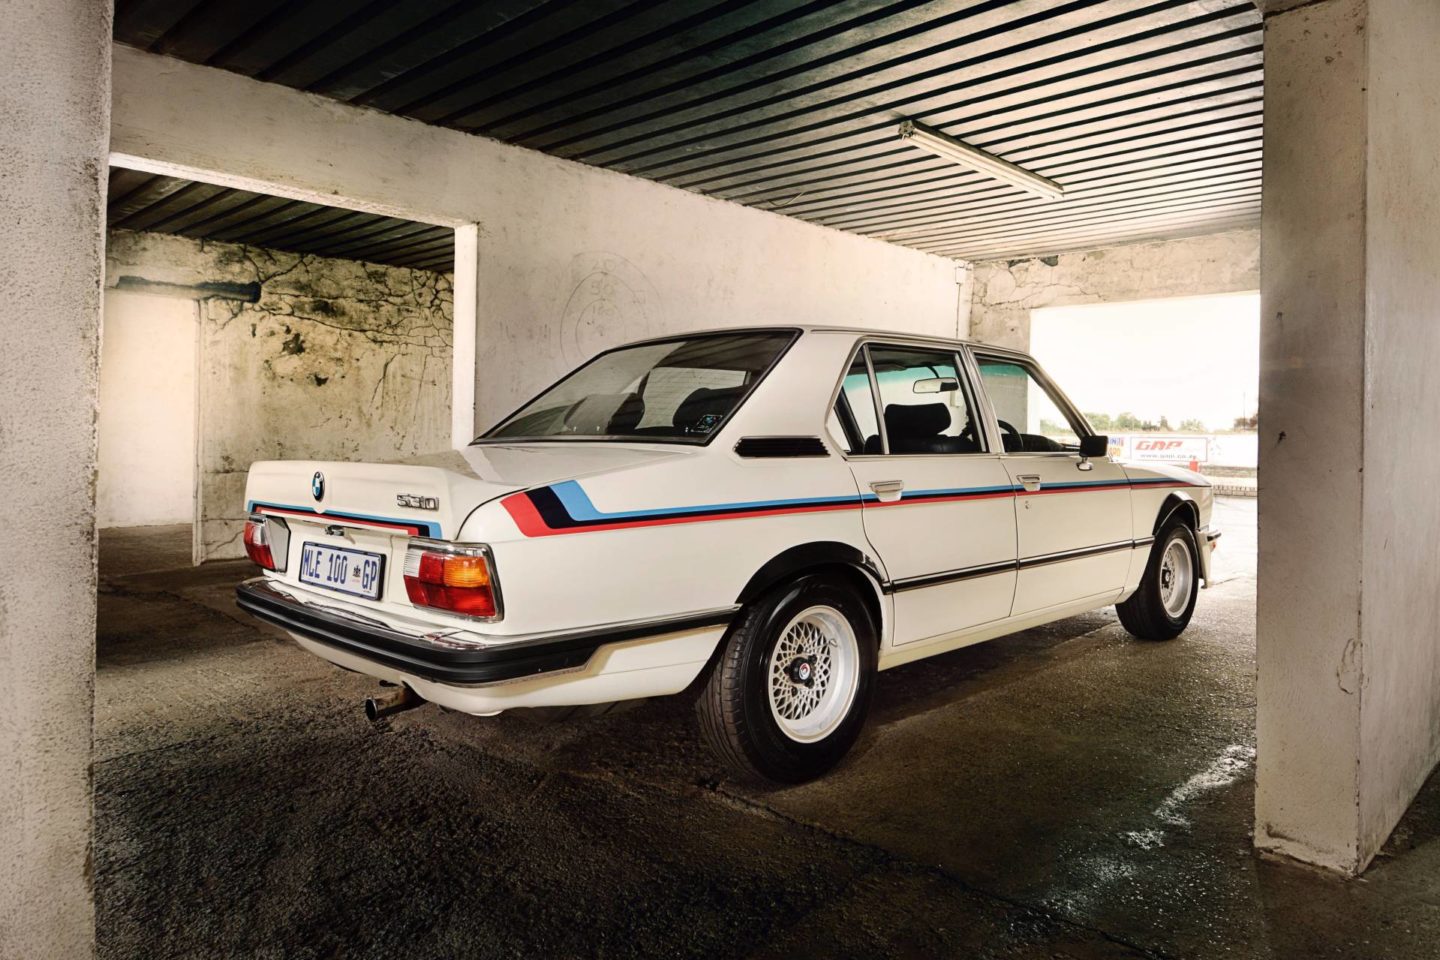 BMW 530 MLE, 1976